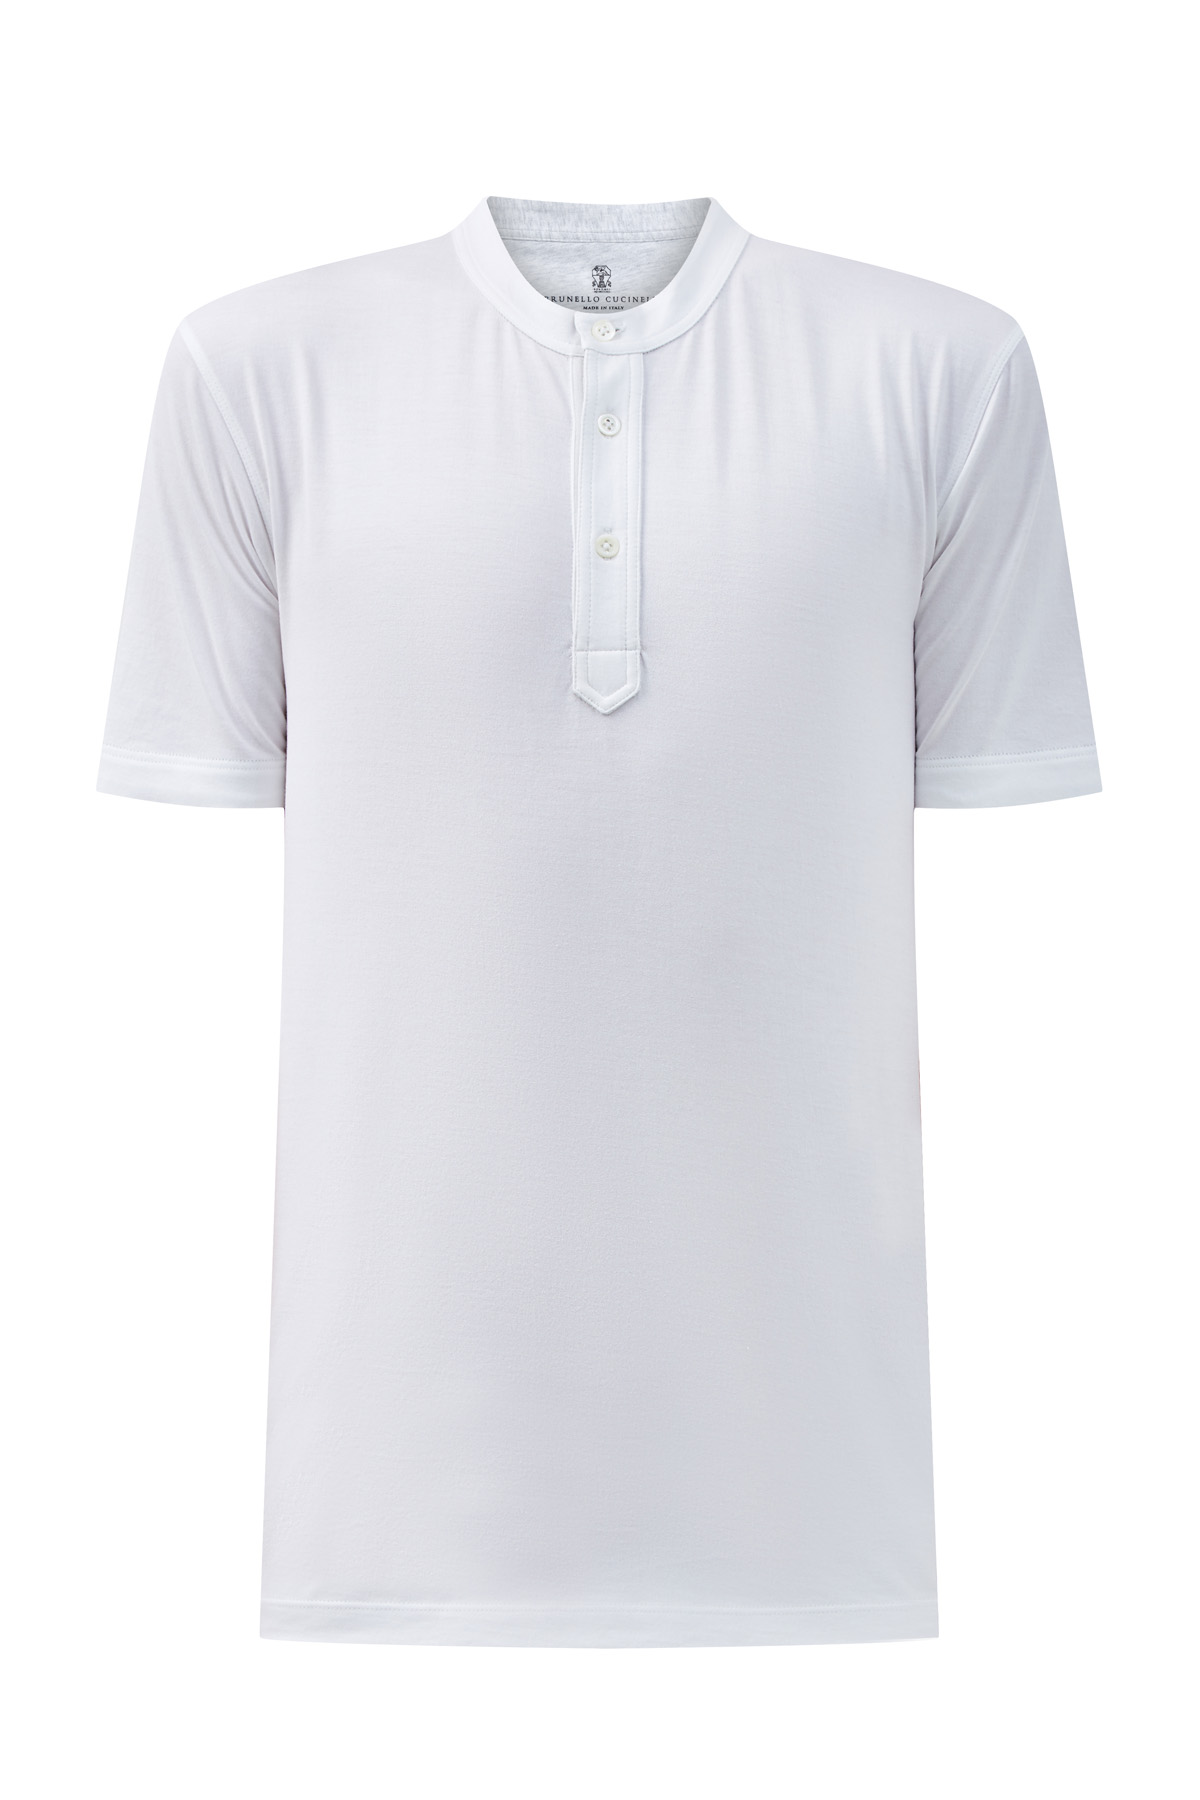 Белая футболка из хлопка с воротом хенли BRUNELLO CUCINELLI, цвет белый, размер 54;56;48 - фото 1